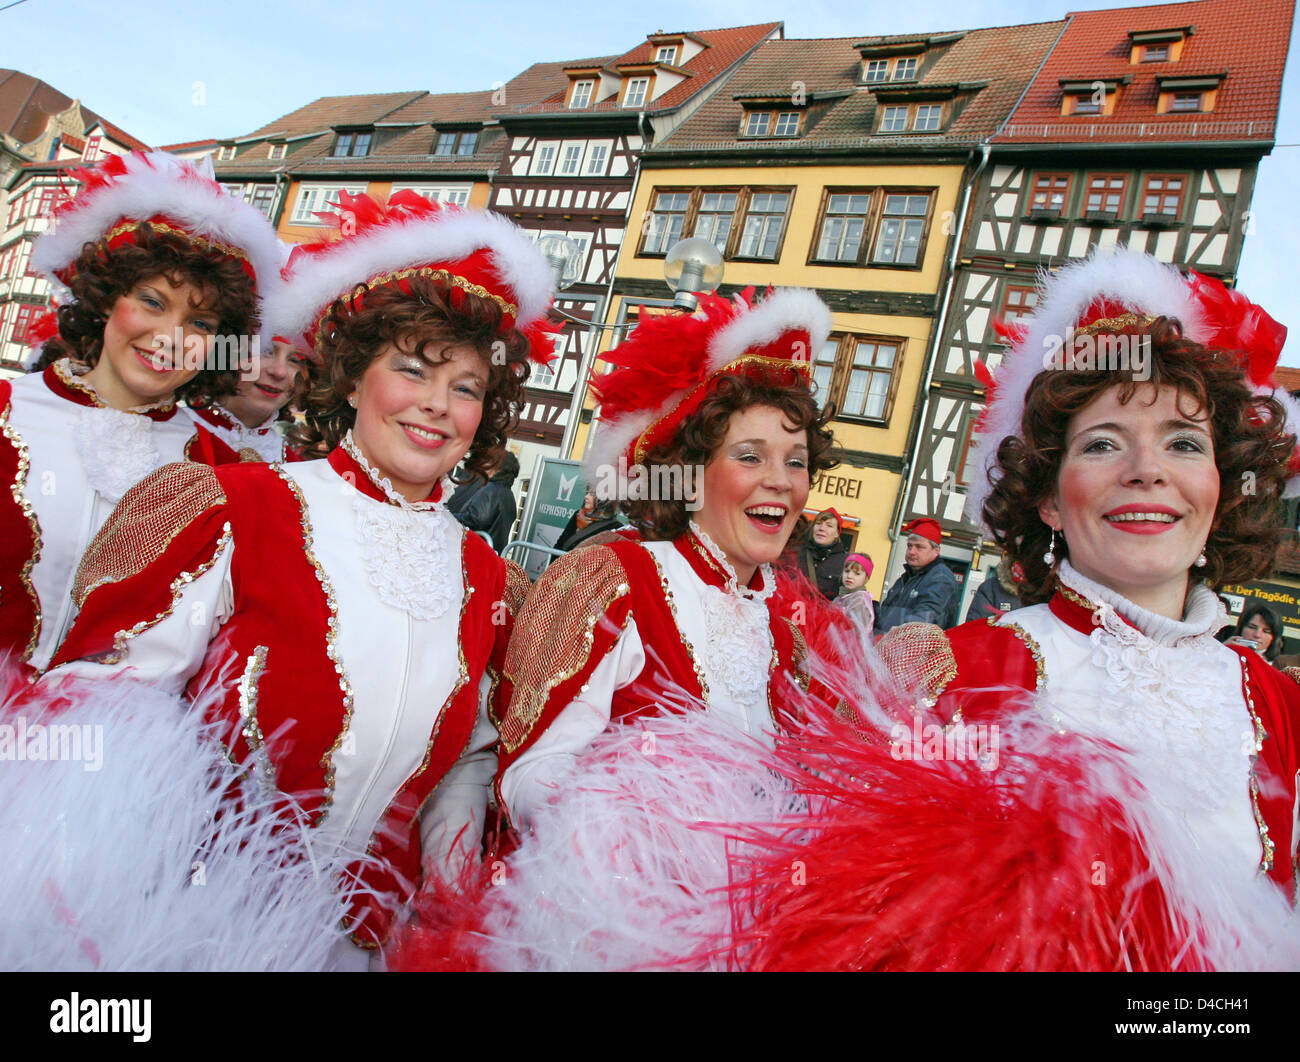 Les gens célèbrent pendant le défilé exubérantes dans la vieille ville d'Erfurt, Allemagne, 03 février 2008. 3 000 artistes des 17 associations carnaval local inclus 70 flotteurs colorés, 16 prince-couples et de nombreuses fanfares. Sur le thème le Wir baden immer alles aus'. Nous prenons toujours la faute), il a été le plus grand défilé de carnaval à Erfurt, avec s'attendent à ce que Banque D'Images